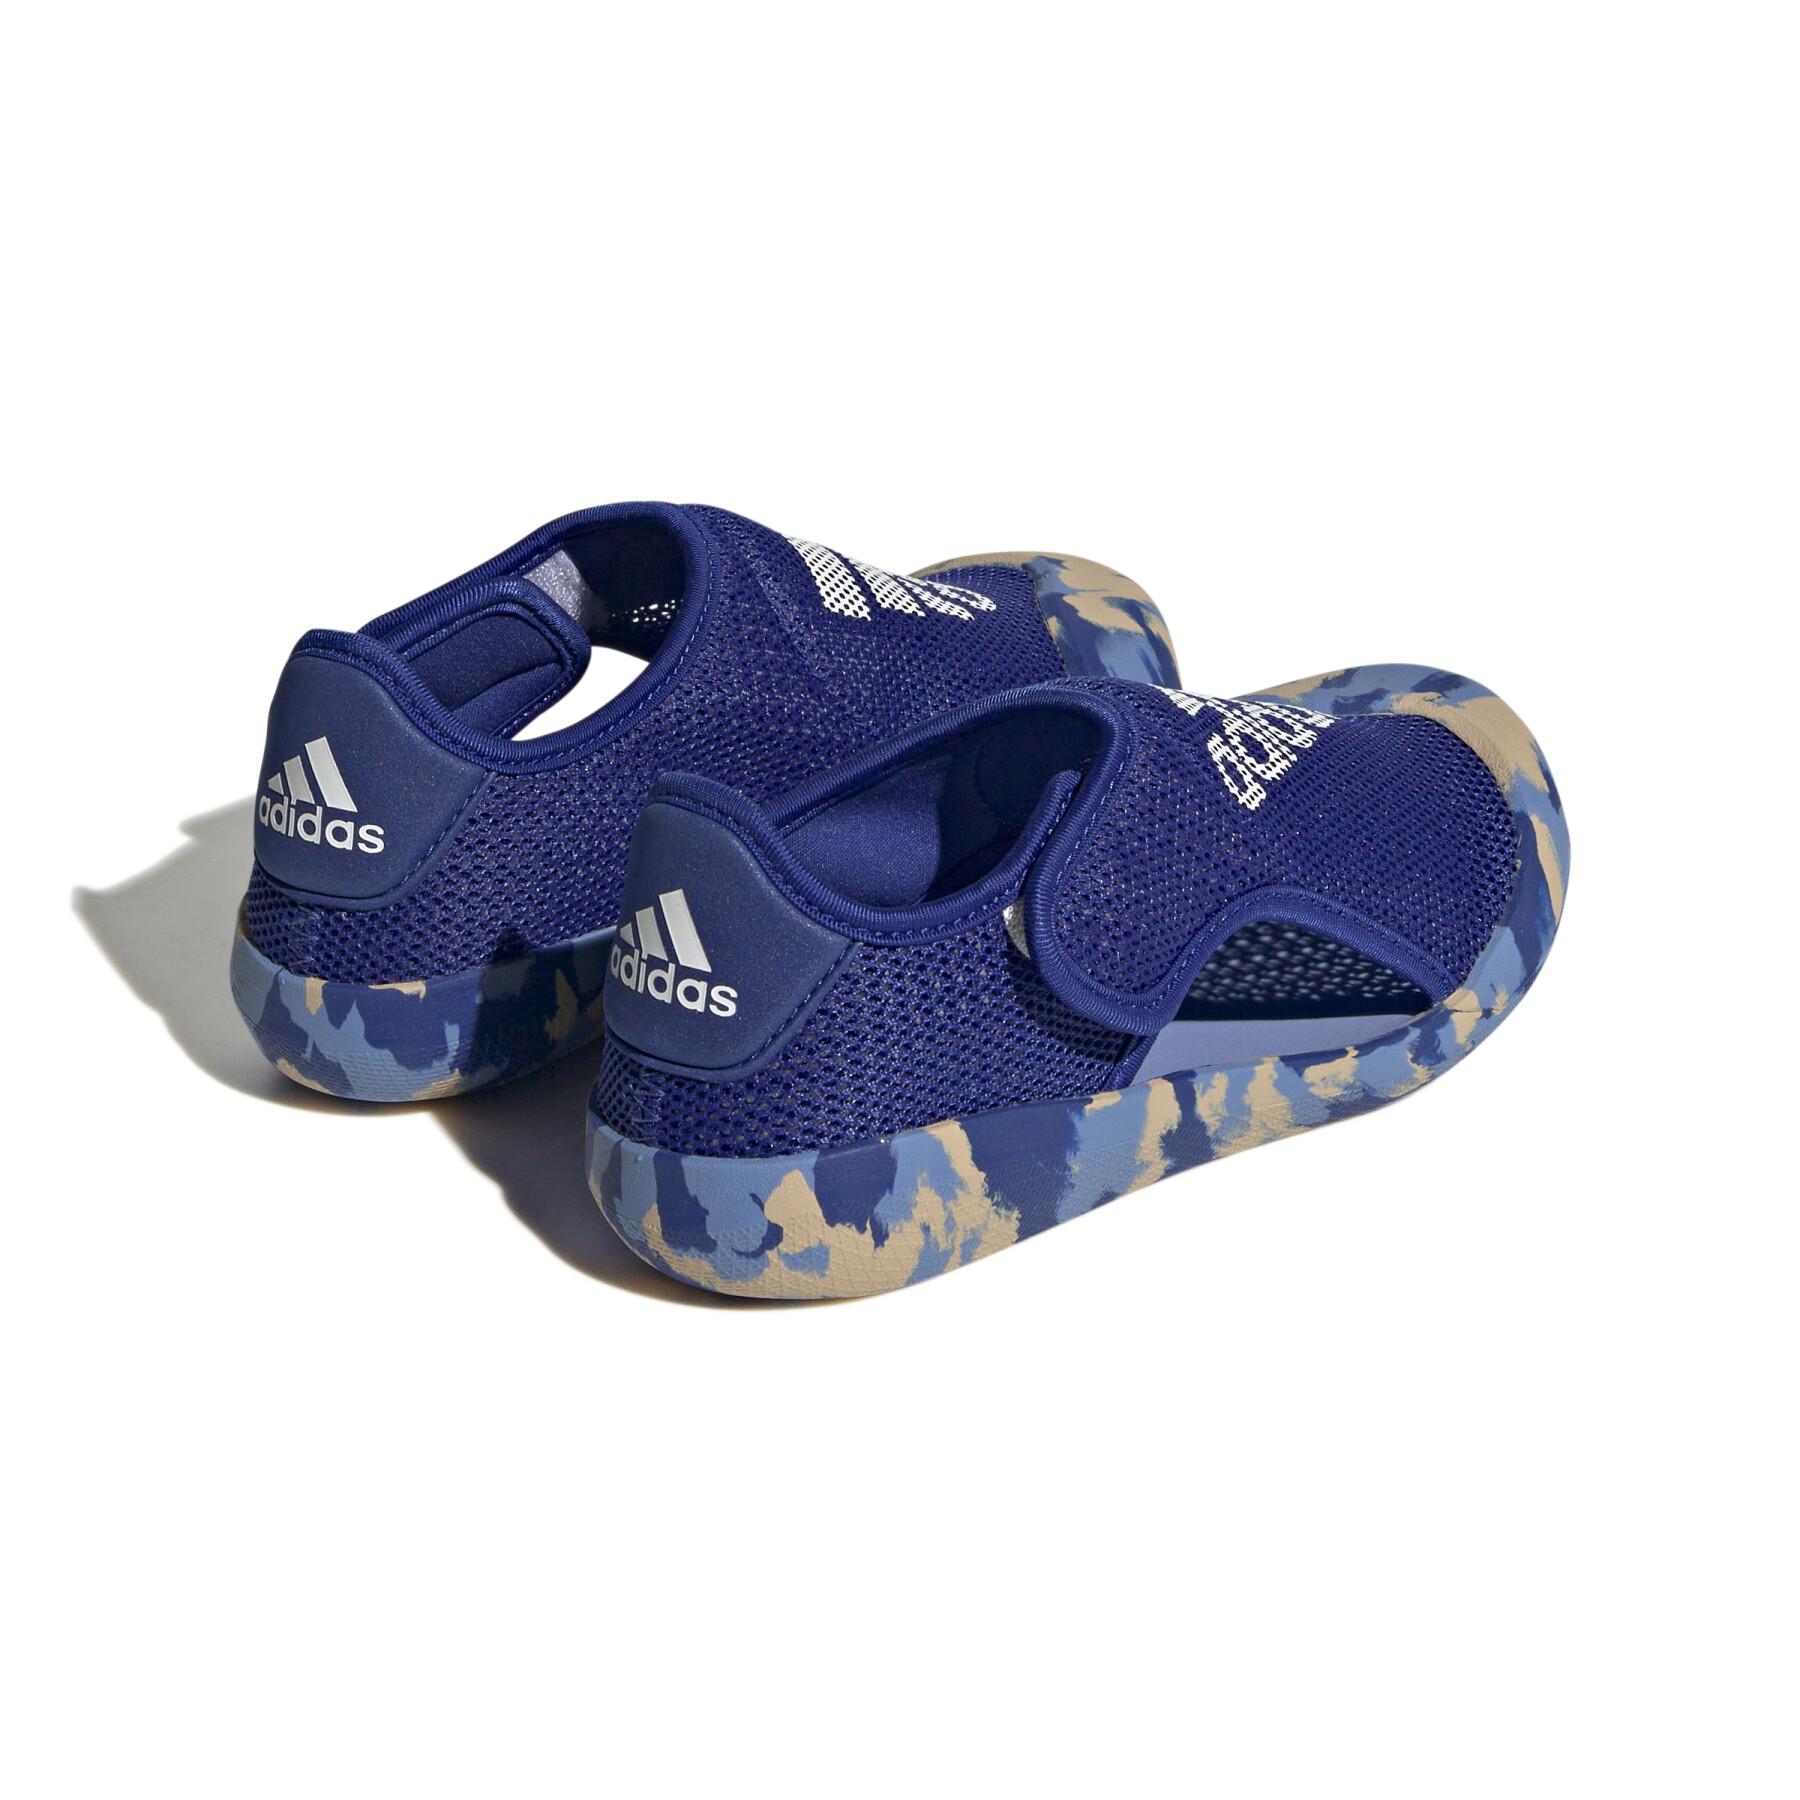 Children's sandals adidas Altaventure Sport